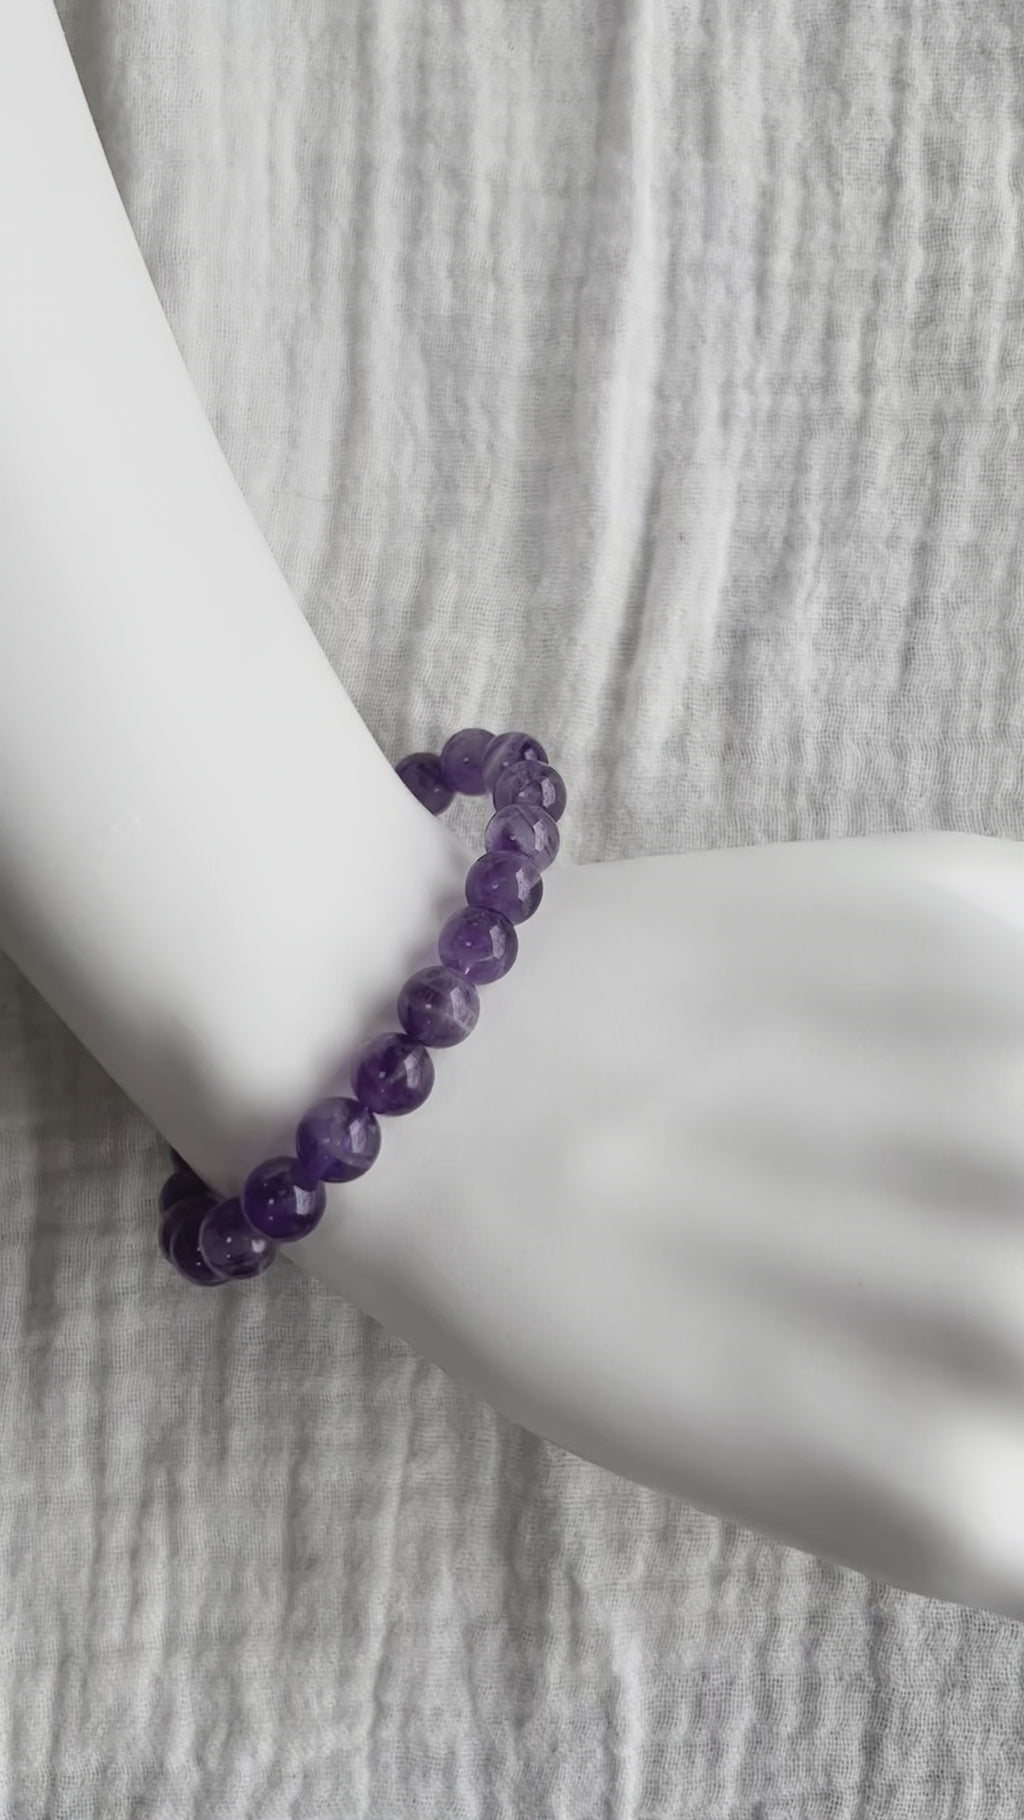 Amethyst Bracelet on wrist - video